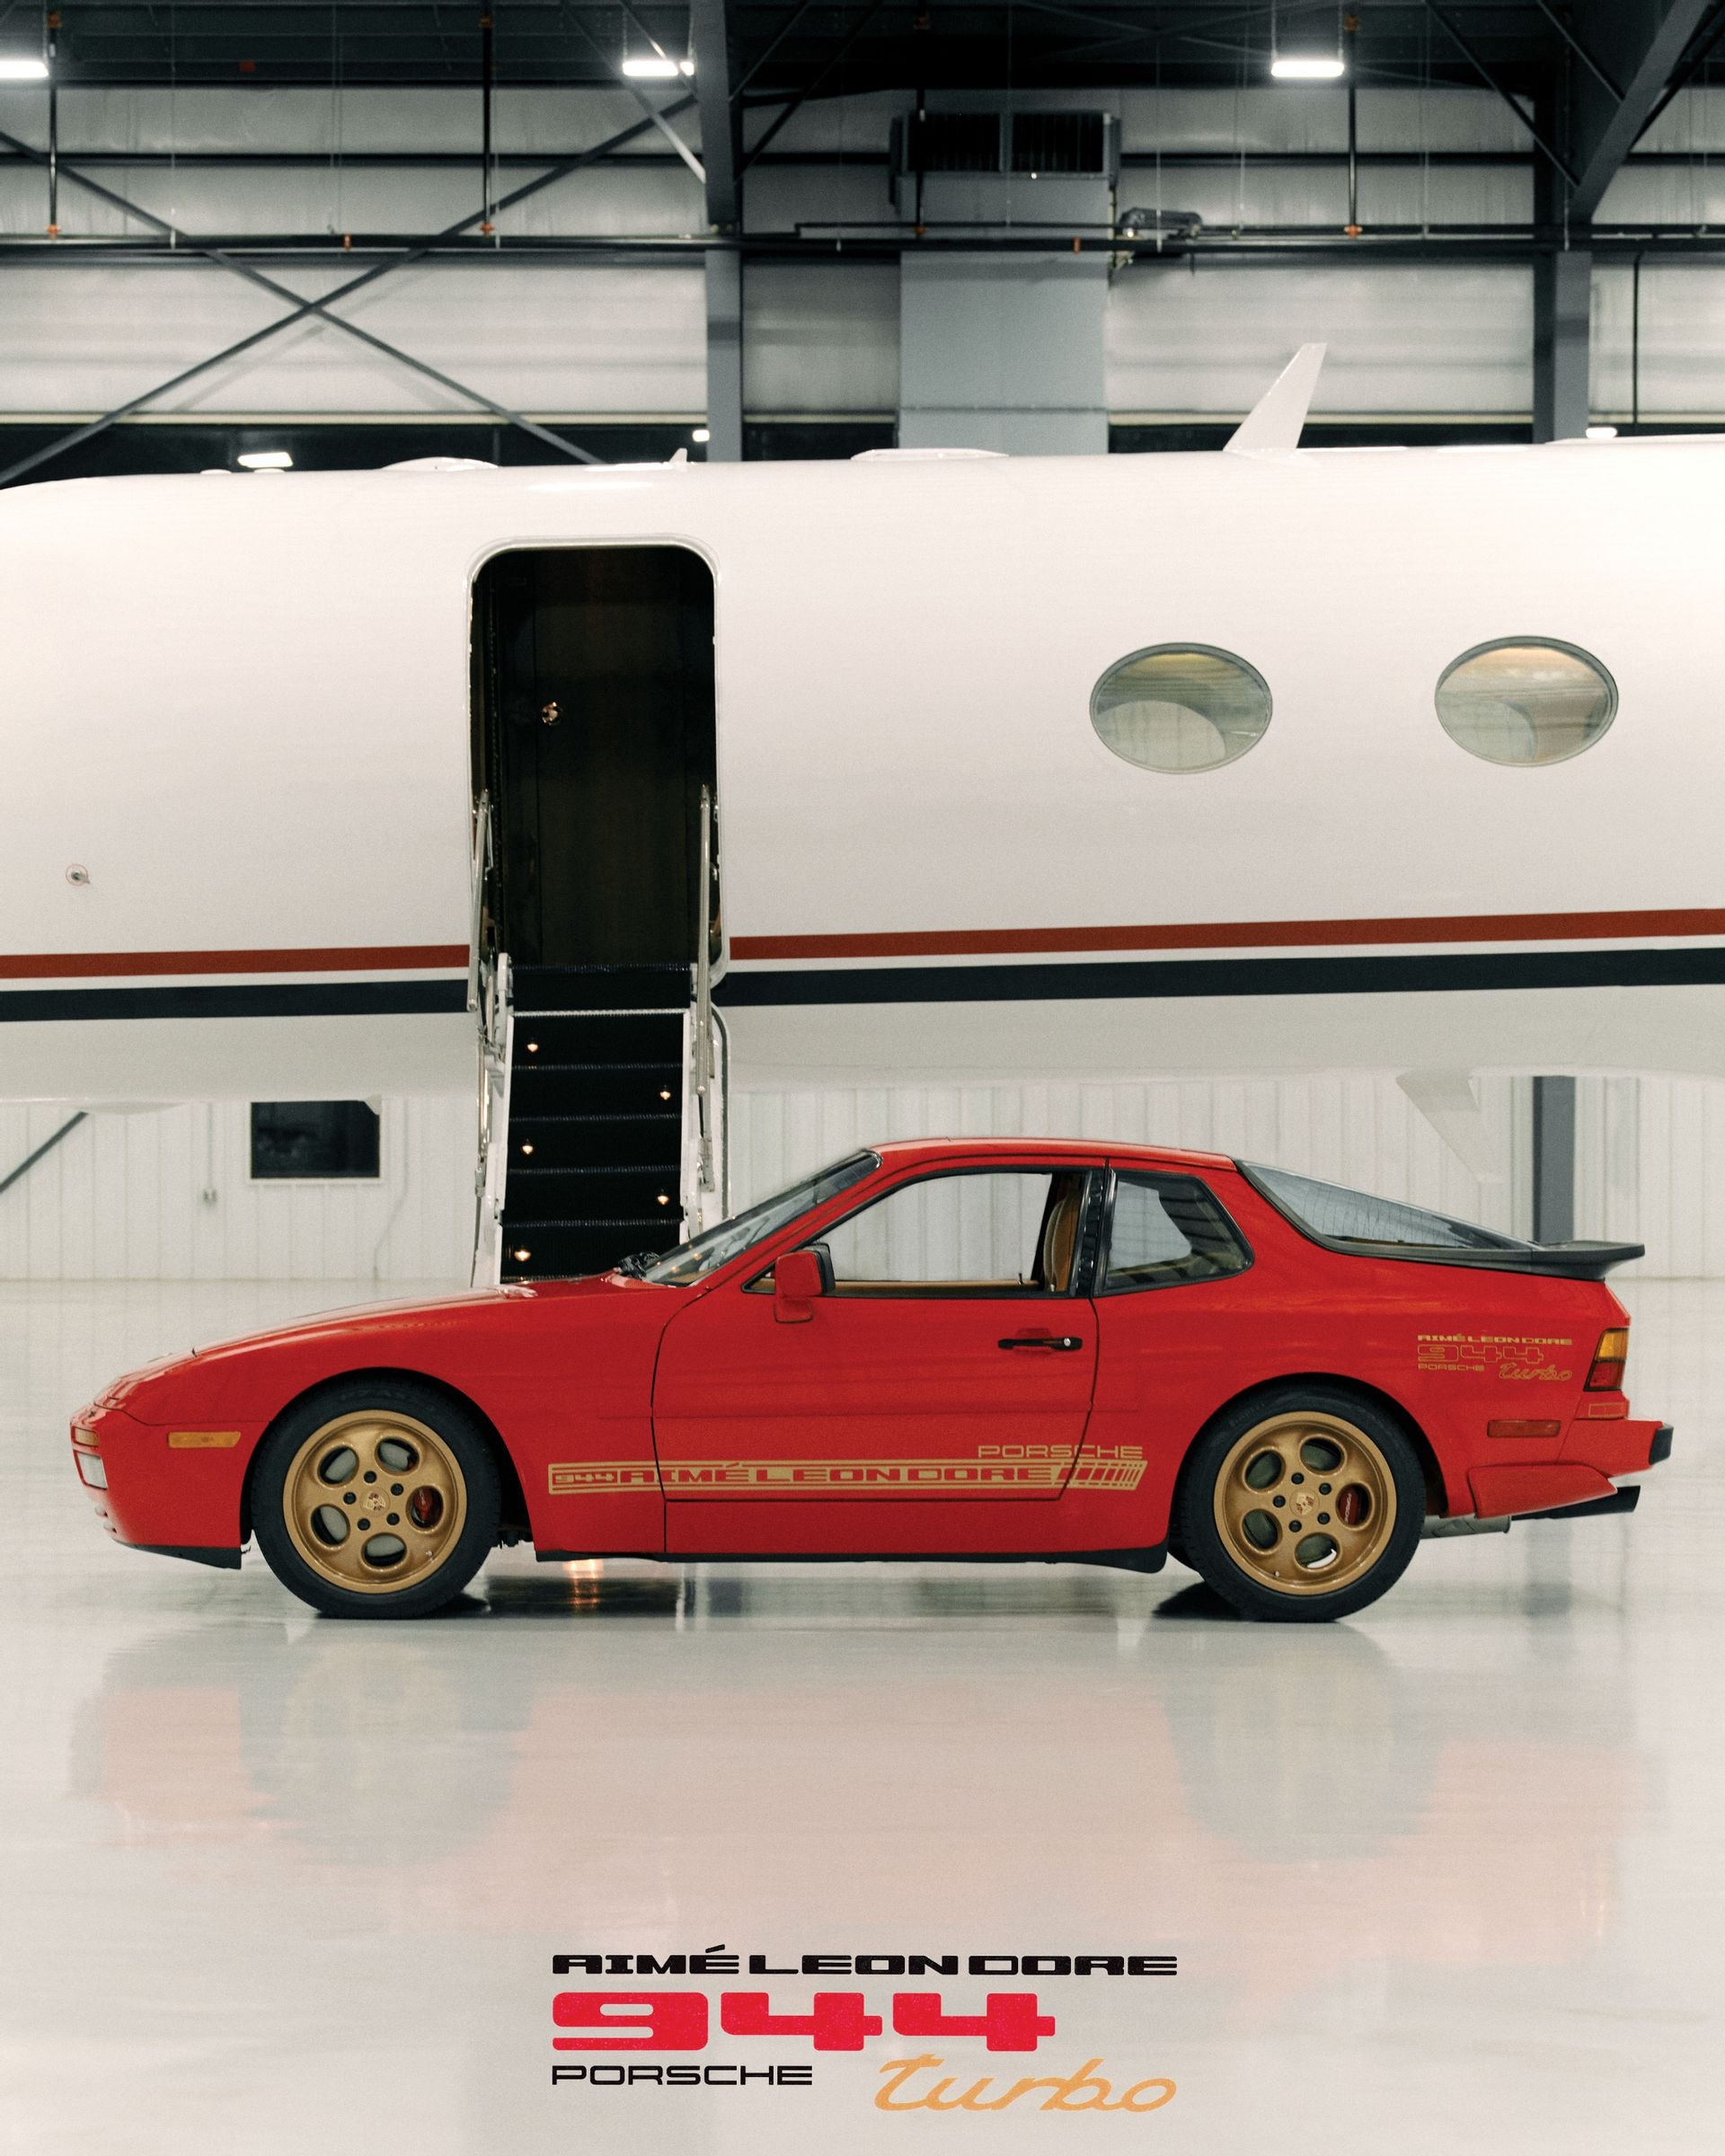 Aimé Leon Dore 攜手 Porsche 打造 1986 944 Turbo 聯名定製車型